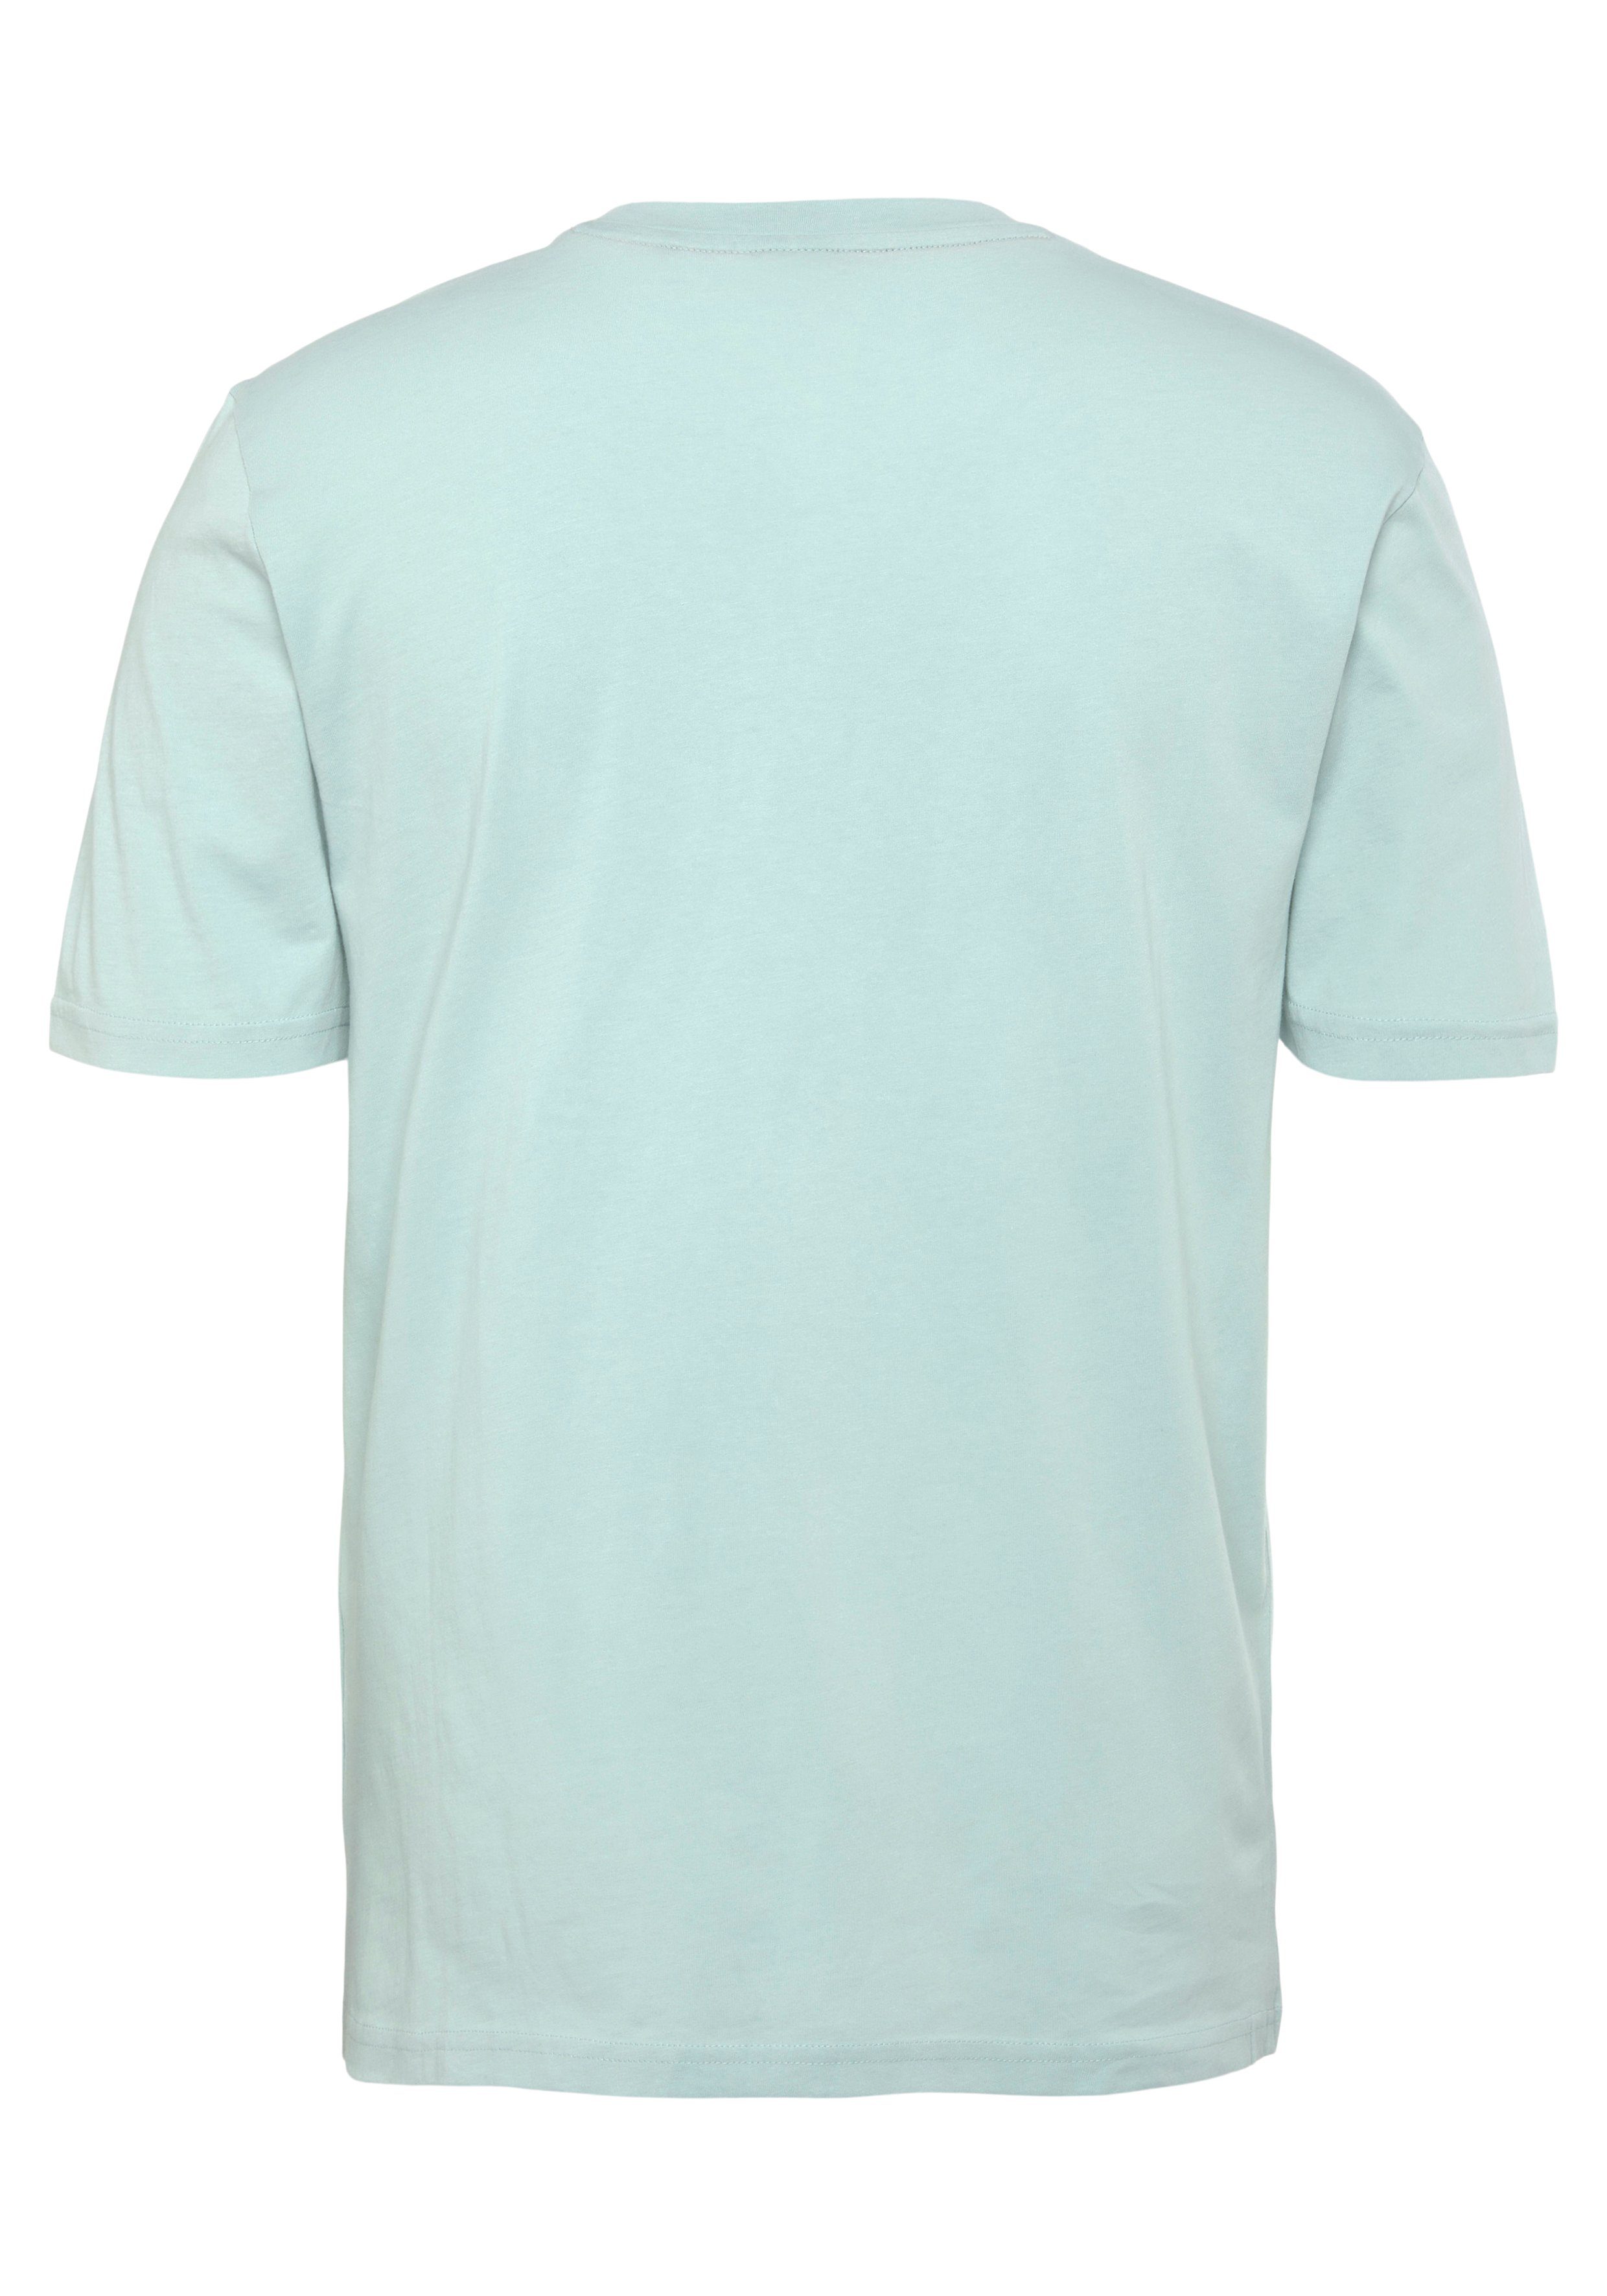 T-Shirt Brust Green335 mit Druck Light/Pastel großem Thinking der 1 BOSS 01 auf BOSS ORANGE 10246016